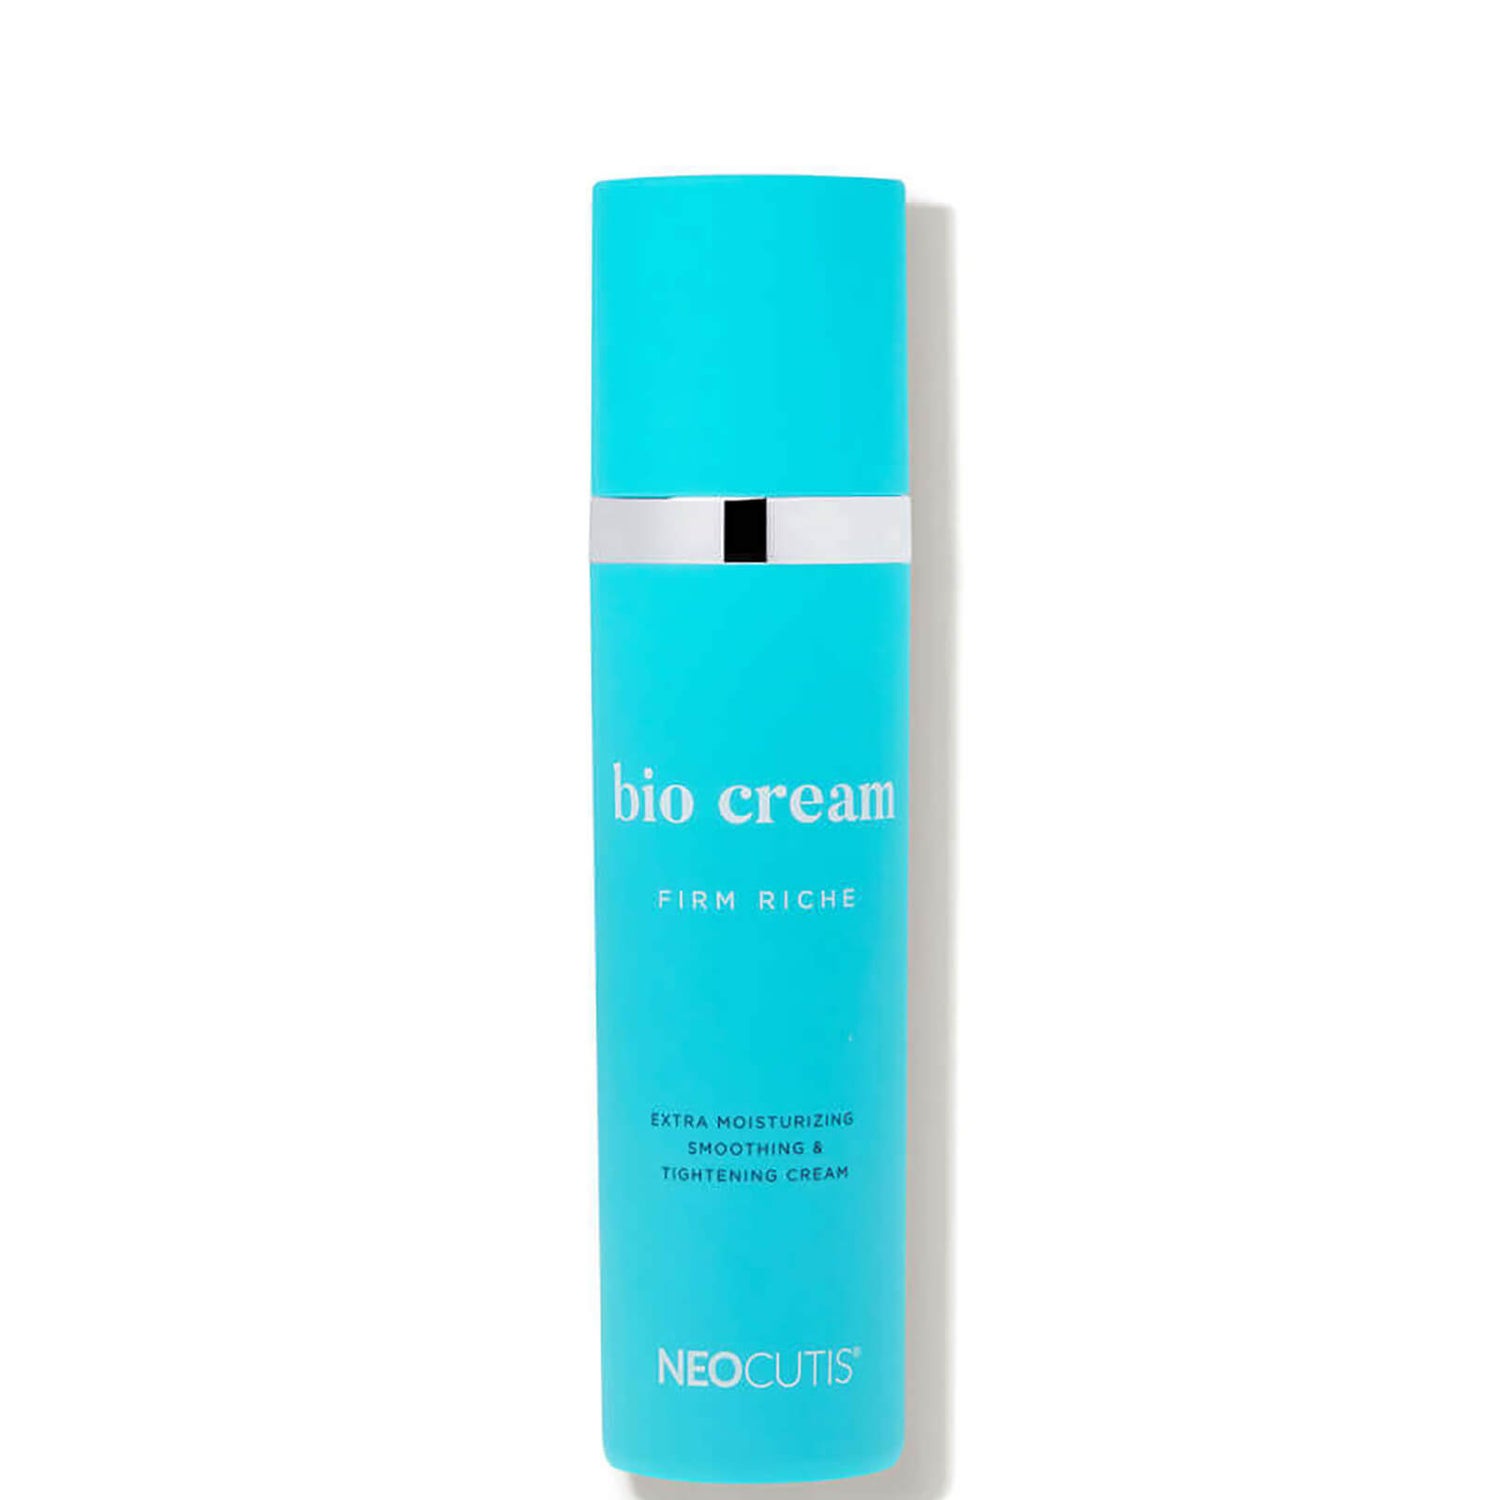 Neocutis Bio Cream Firm Riche (1.69 fl. oz.)